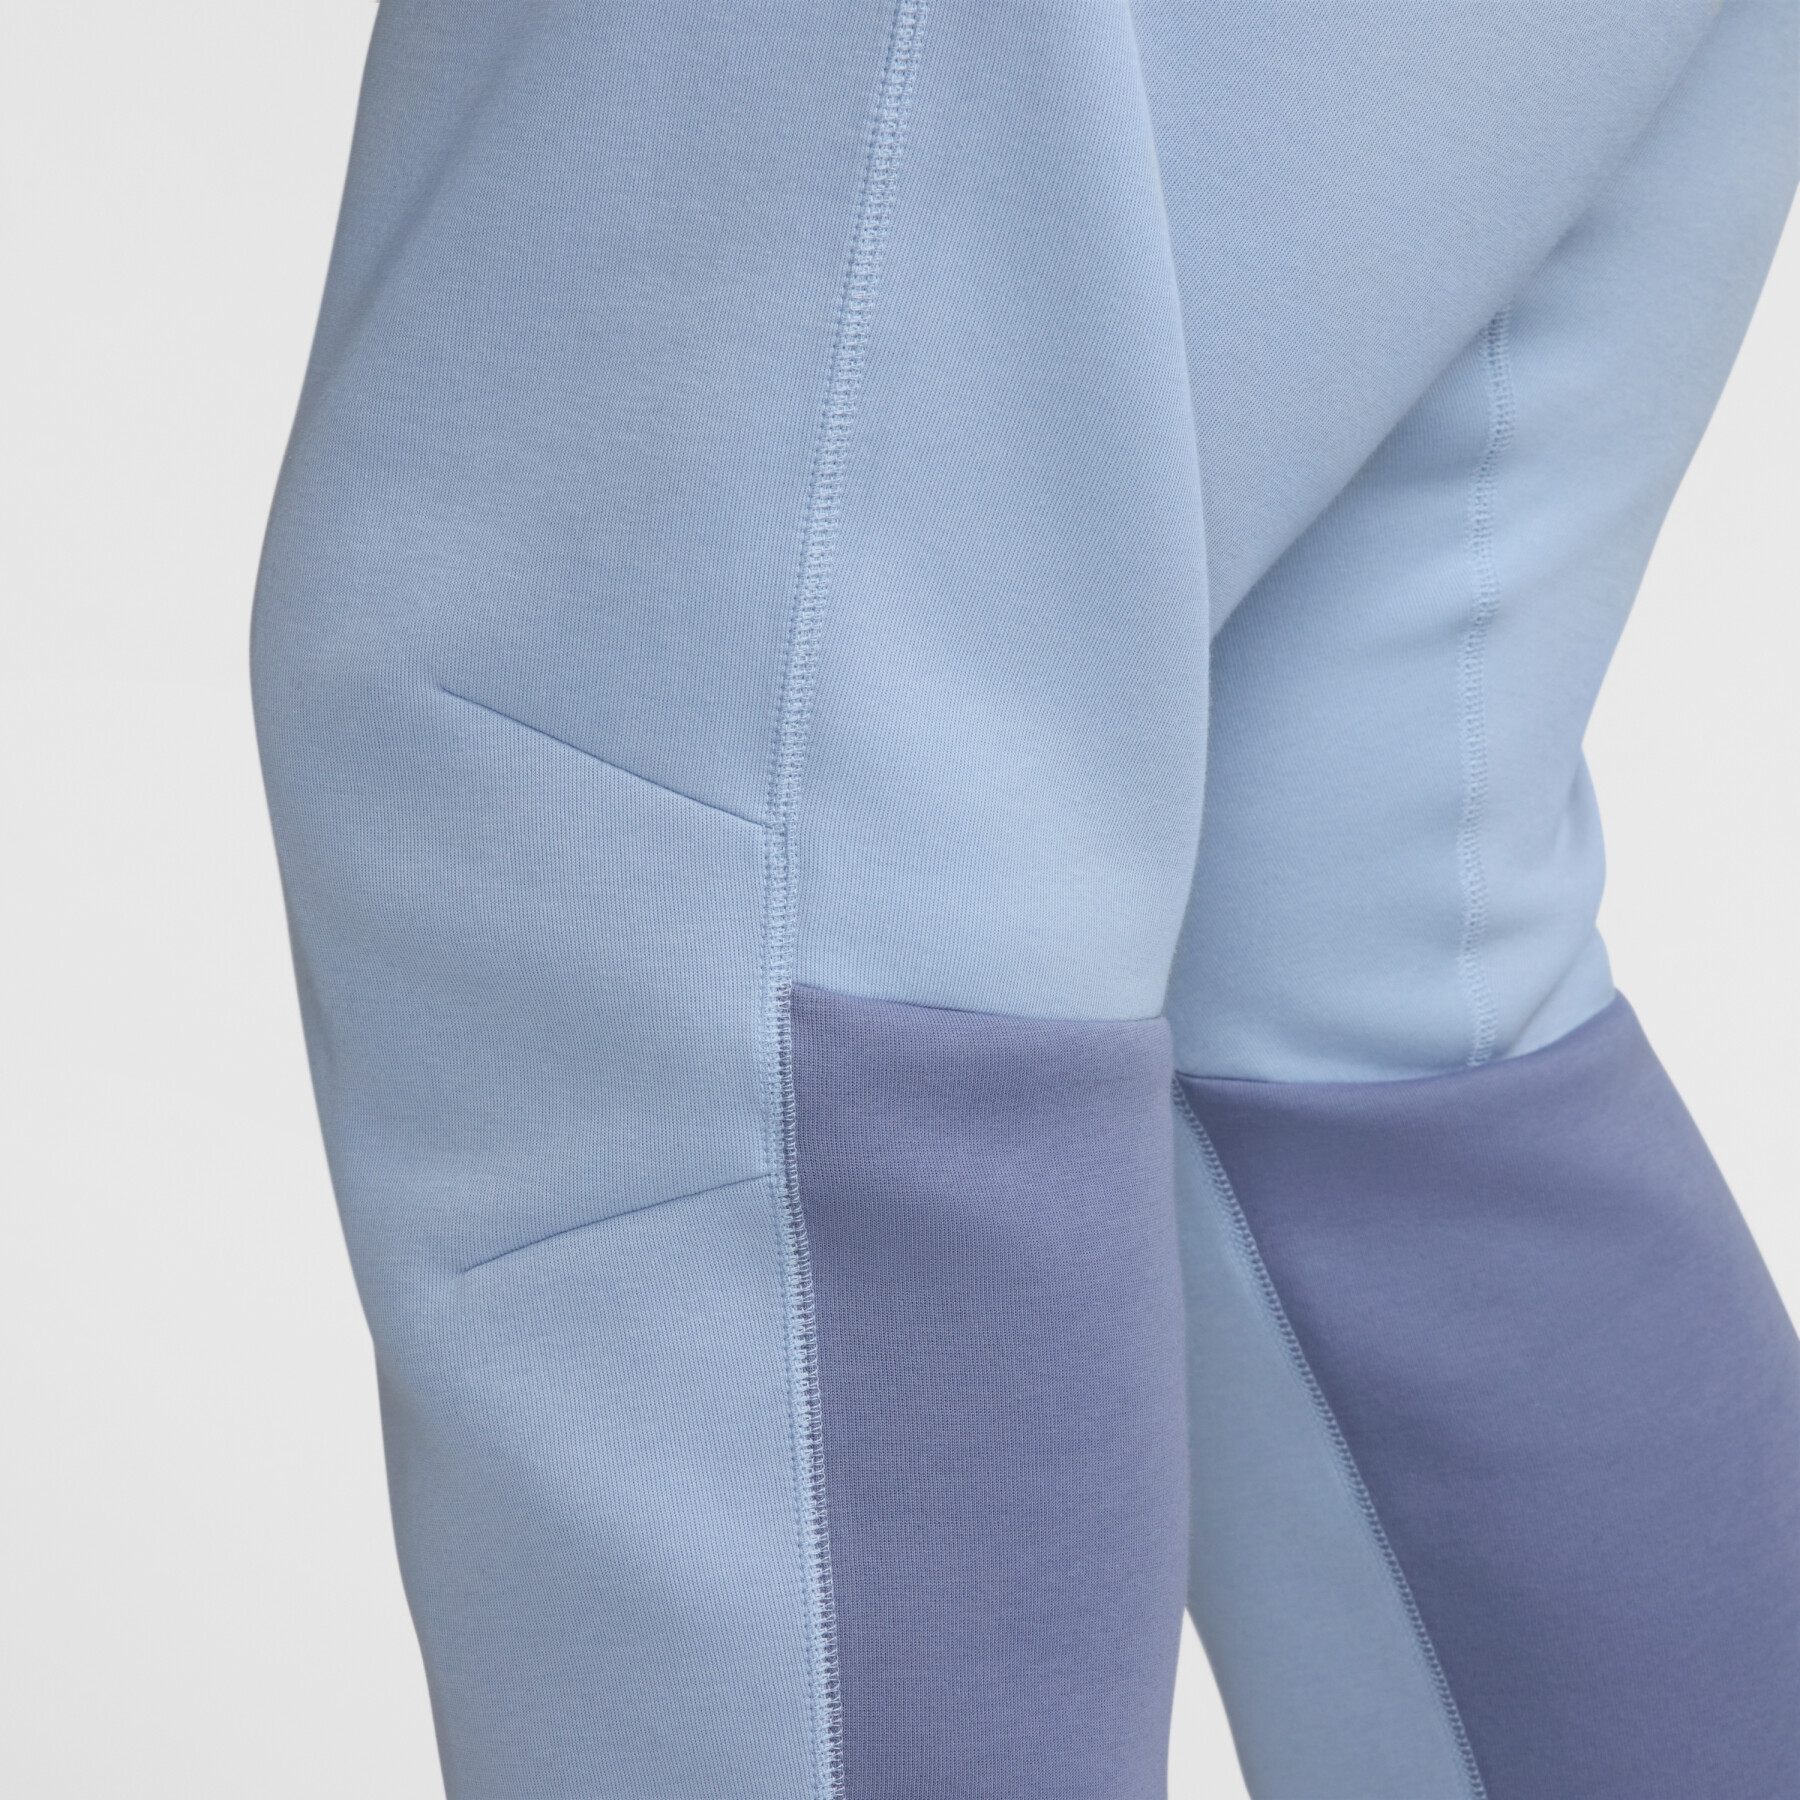 Pantalon de survêtement slim Nike Tech Fleece